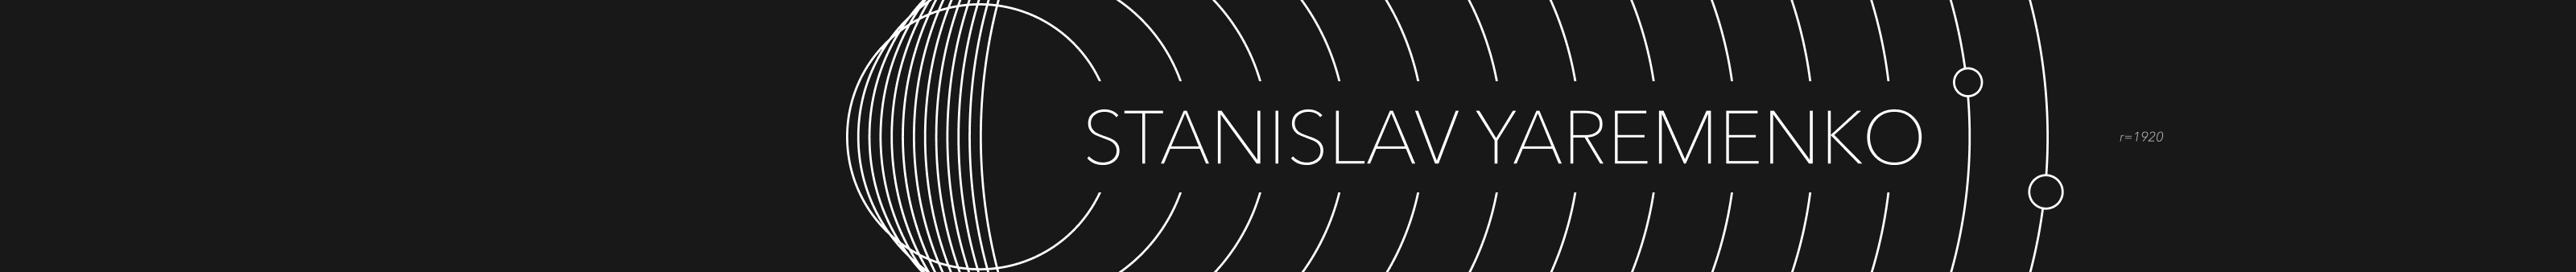 Stanislav Yaremenko's profile banner